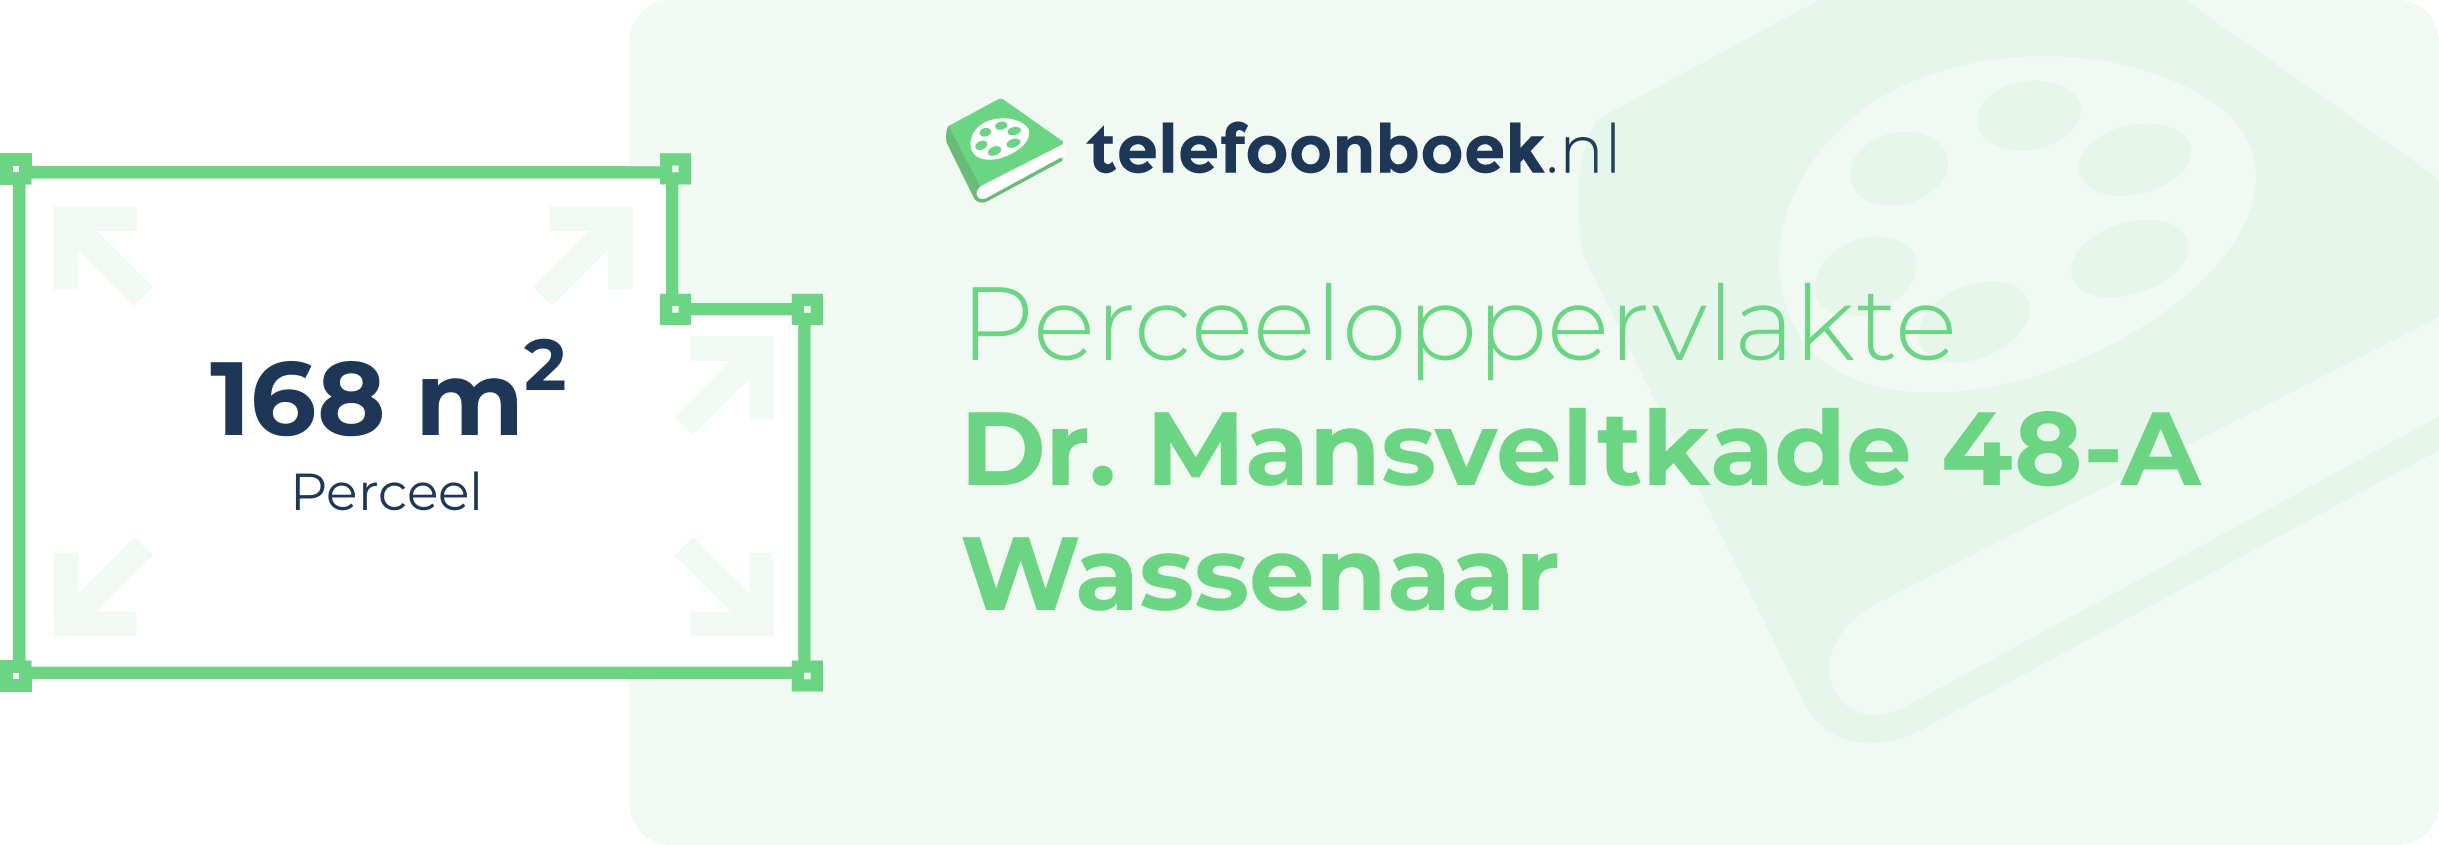 Perceeloppervlakte Dr. Mansveltkade 48-A Wassenaar